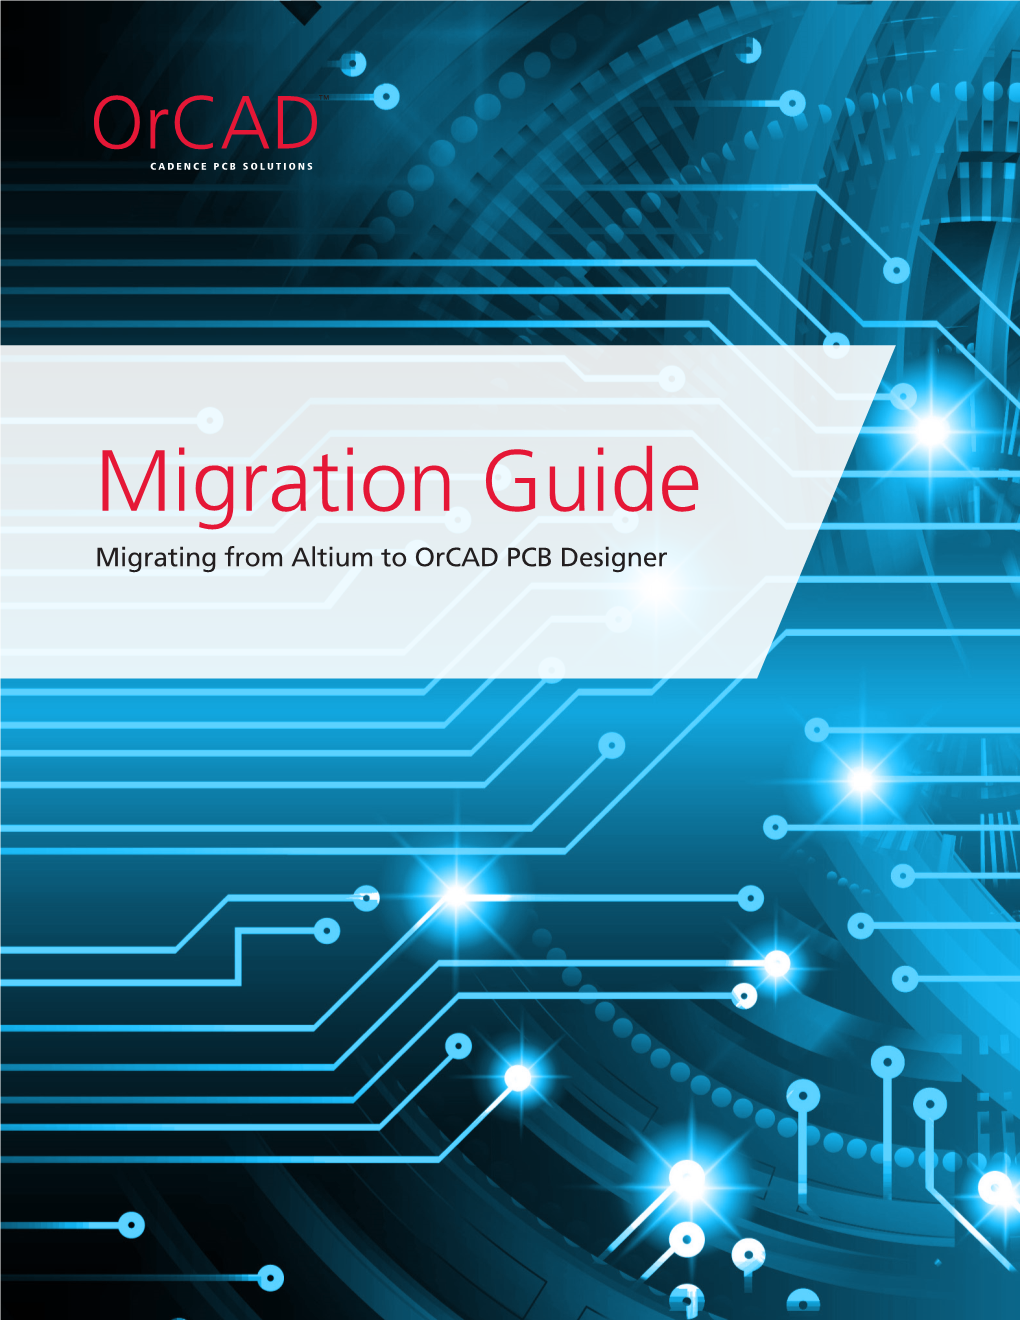 Altium ® Migration Guide